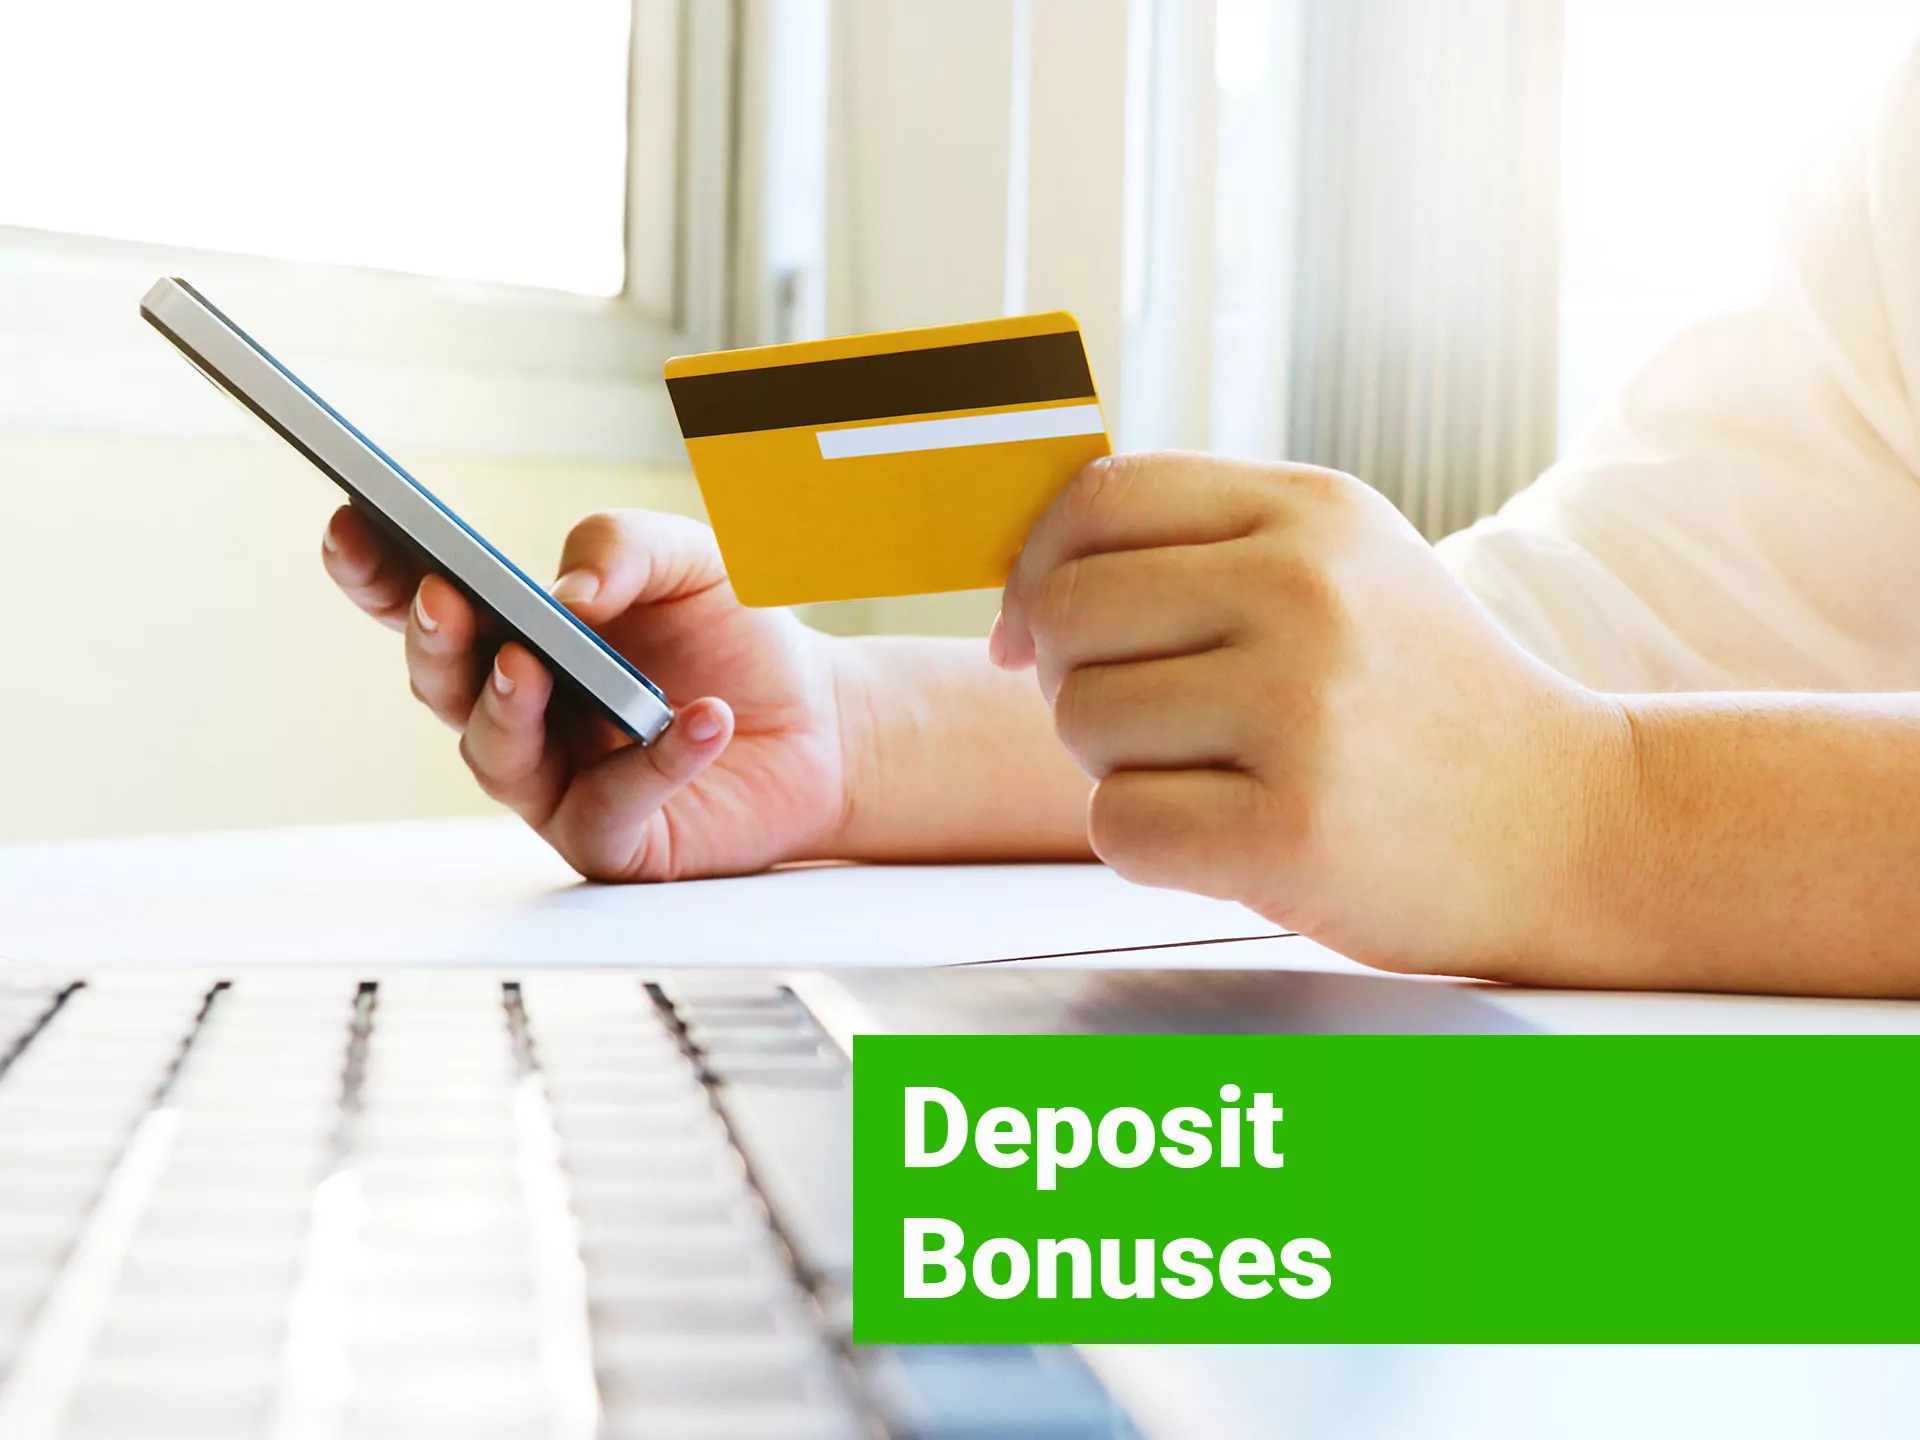 After first deposit you get your deposit bonus.